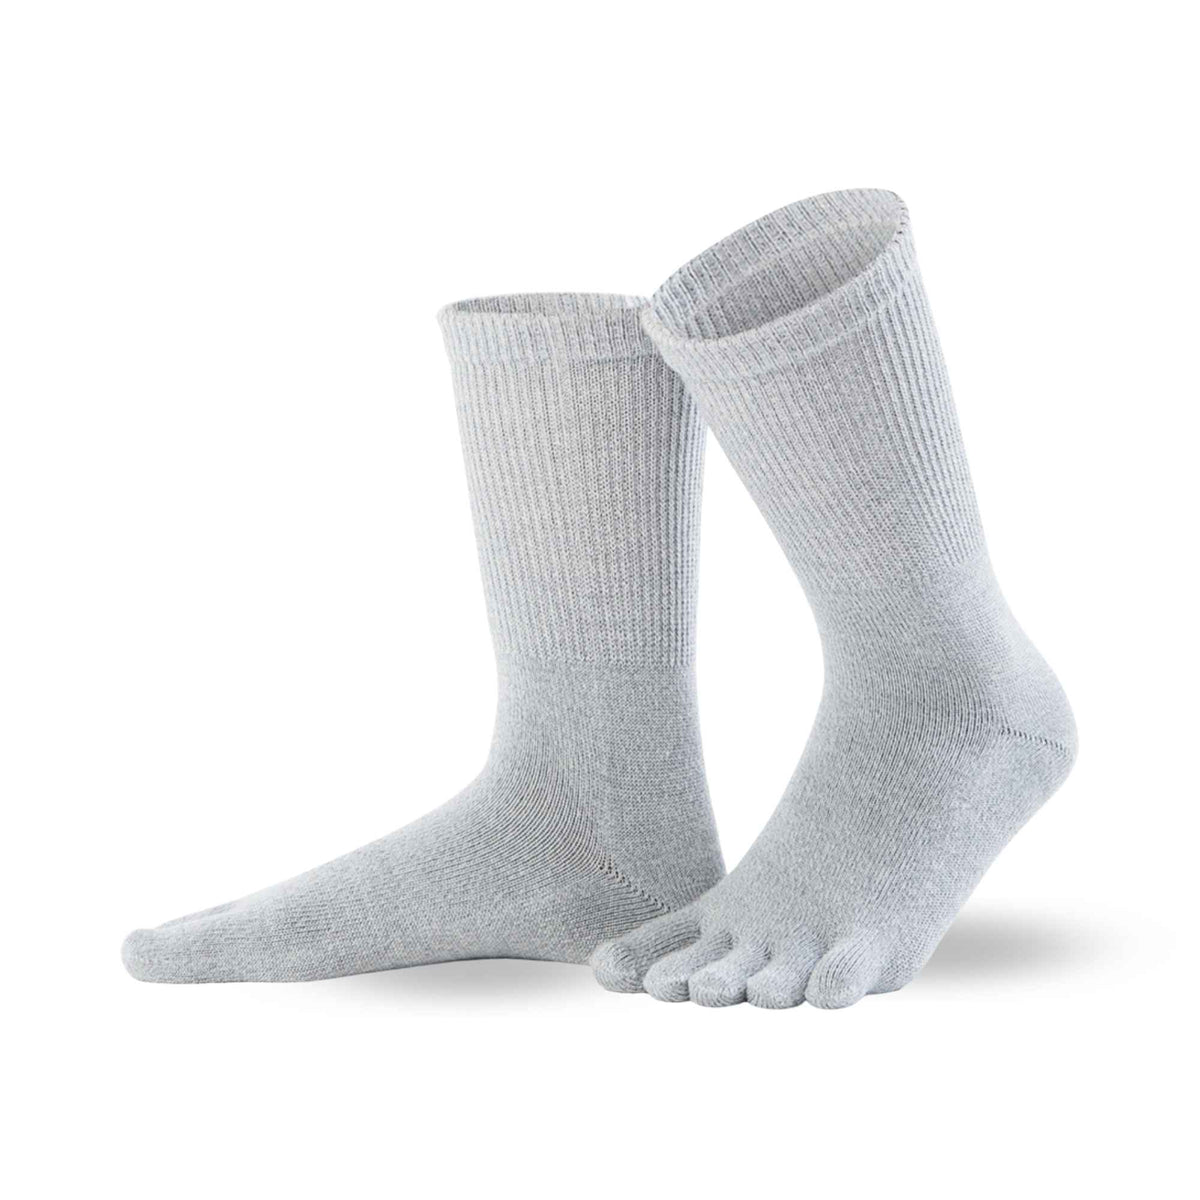 Knitido® Merino Optimo super soft merino wool toe socks